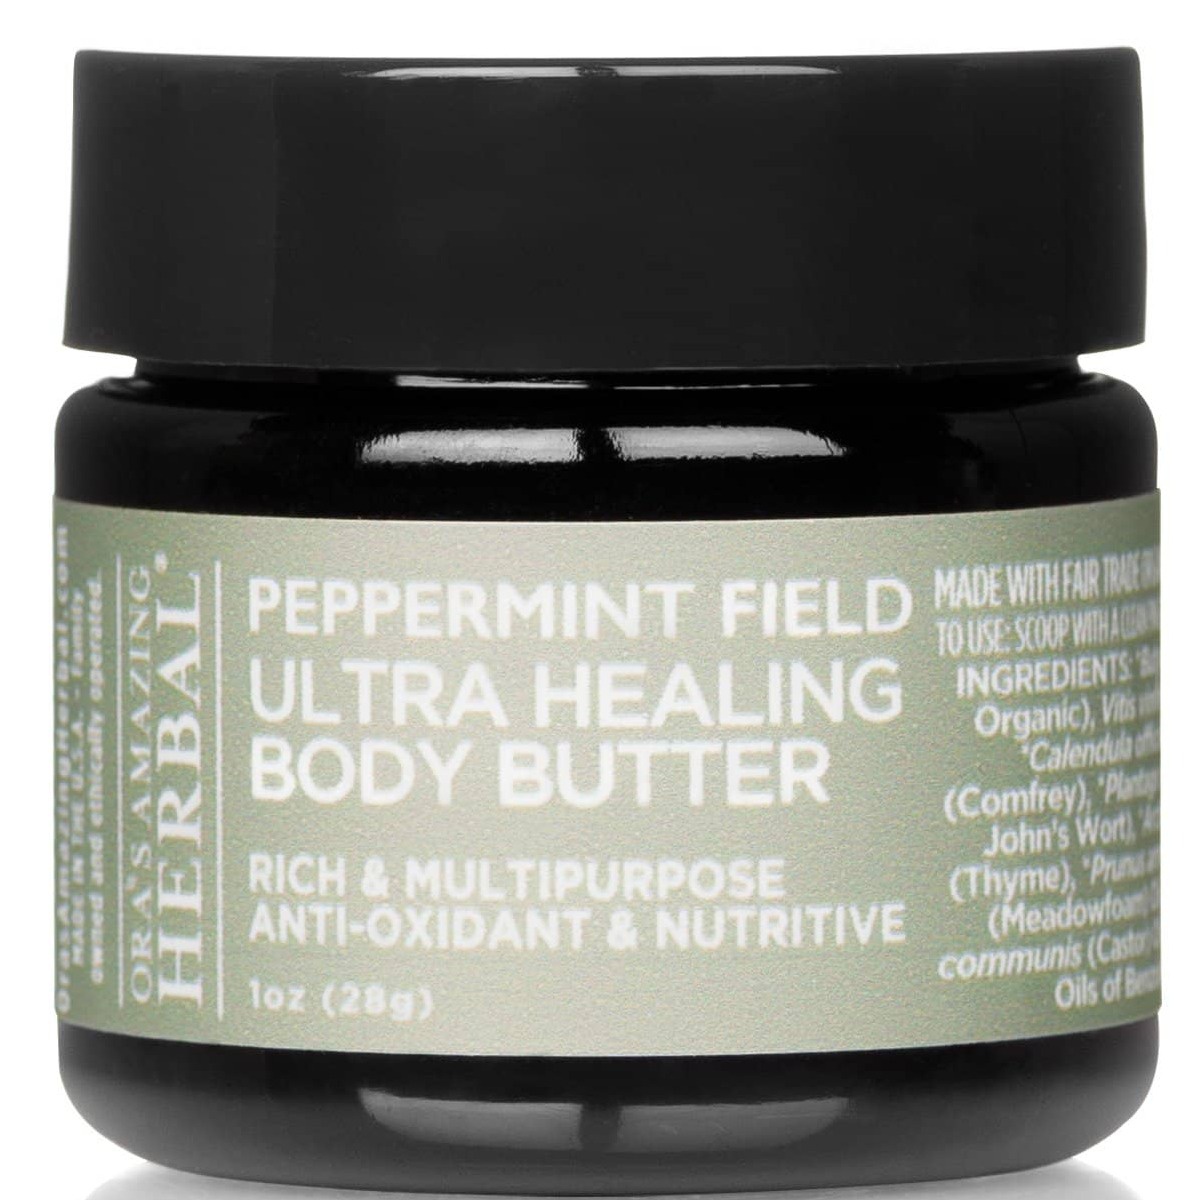 Ora's Amazing Herbal Ultra Healing Body Butter, Peppermint Field